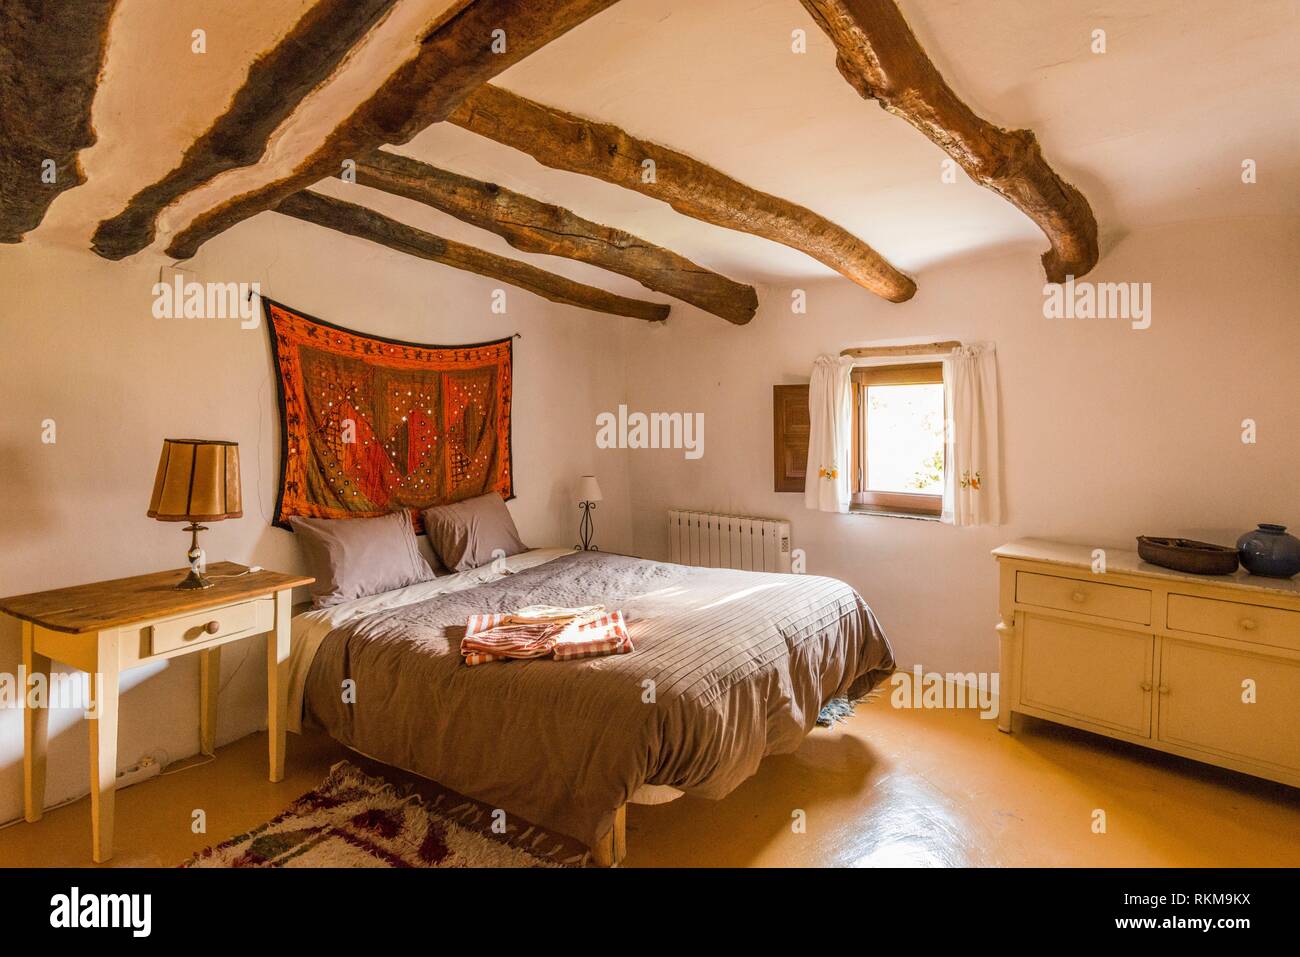 Chambre à coucher. L'intérieur d'une maison traditionnelle dans la région  de Capileira, Alpujarras, Espagne Photo Stock - Alamy